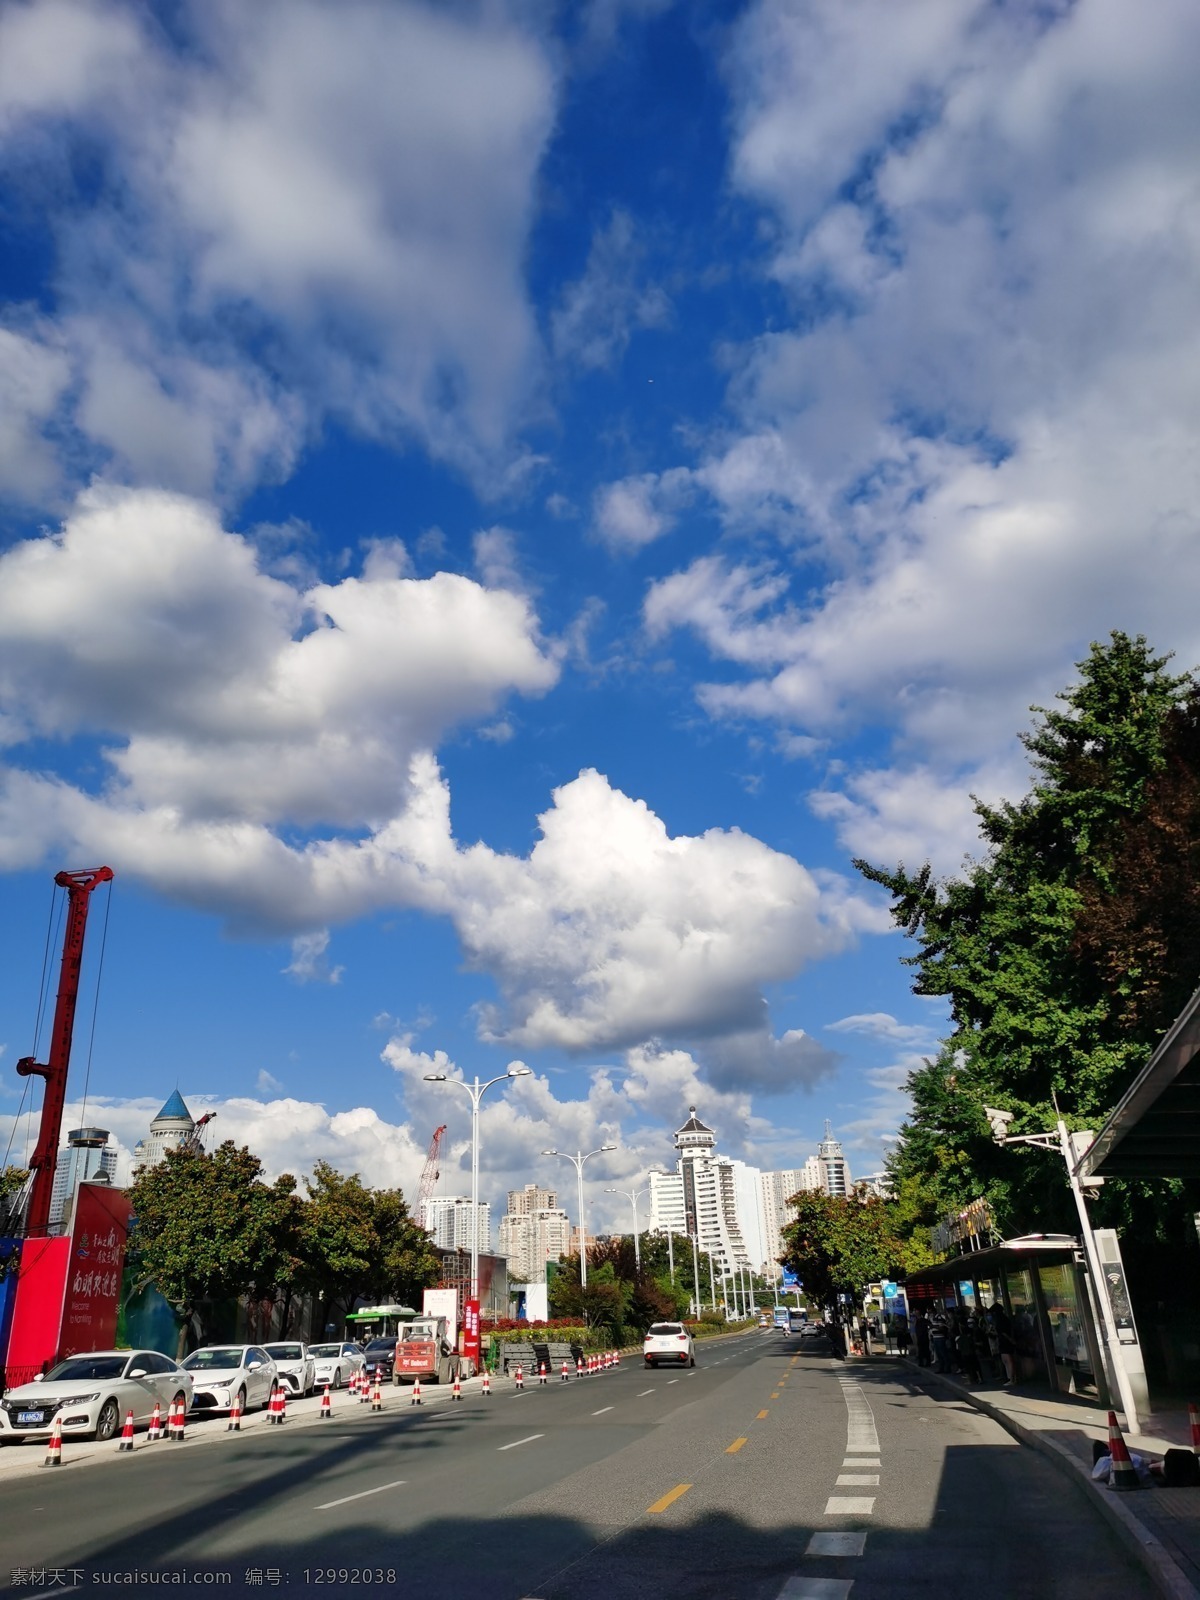 城市街道 城市 街道 道路 蓝天 树木 建筑景观 自然景观 白云 云朵 蓝天白云 街道天空 天空 晴天 自然风景